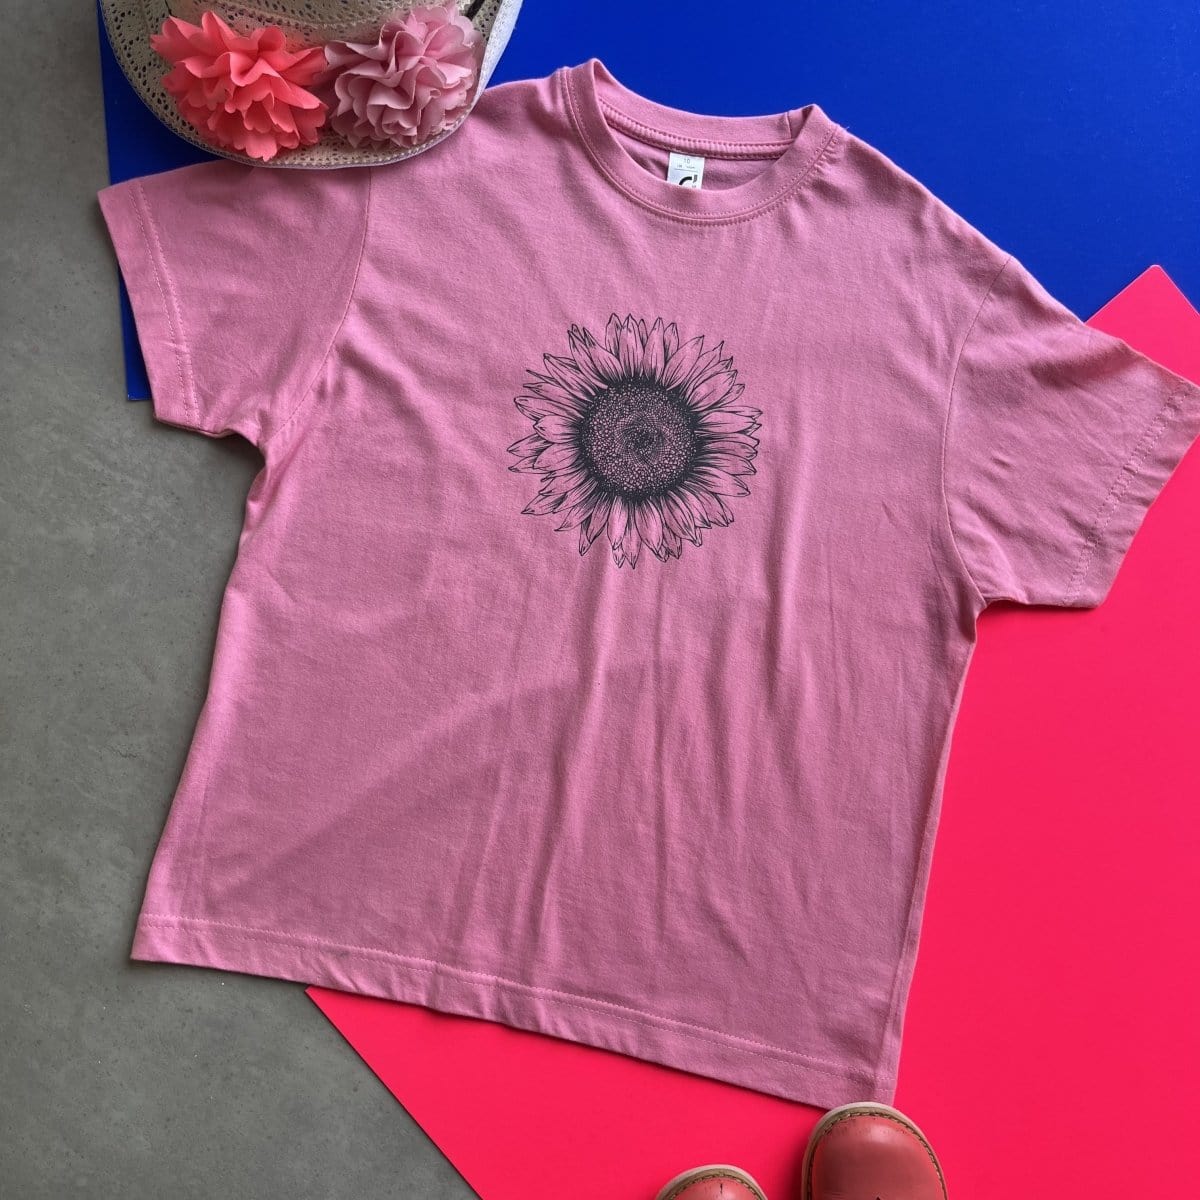 Kids Sunflower T Shirt, country girls sunflower top cute girls t shirt